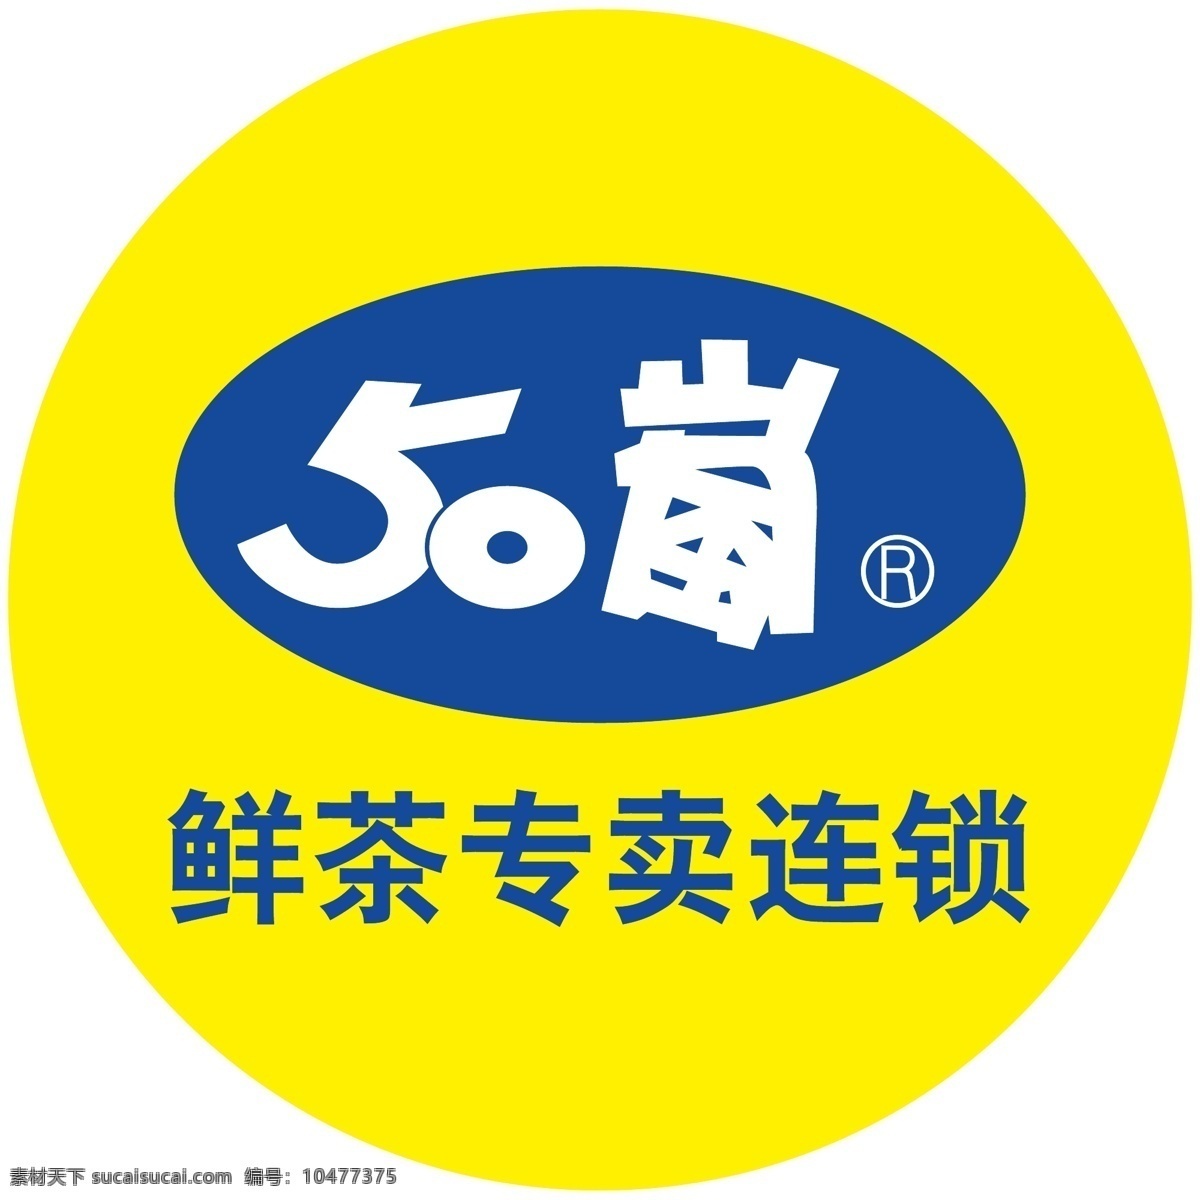 五十岚 奶茶店 标志 鲜茶 黄色 连锁店 矢量素材